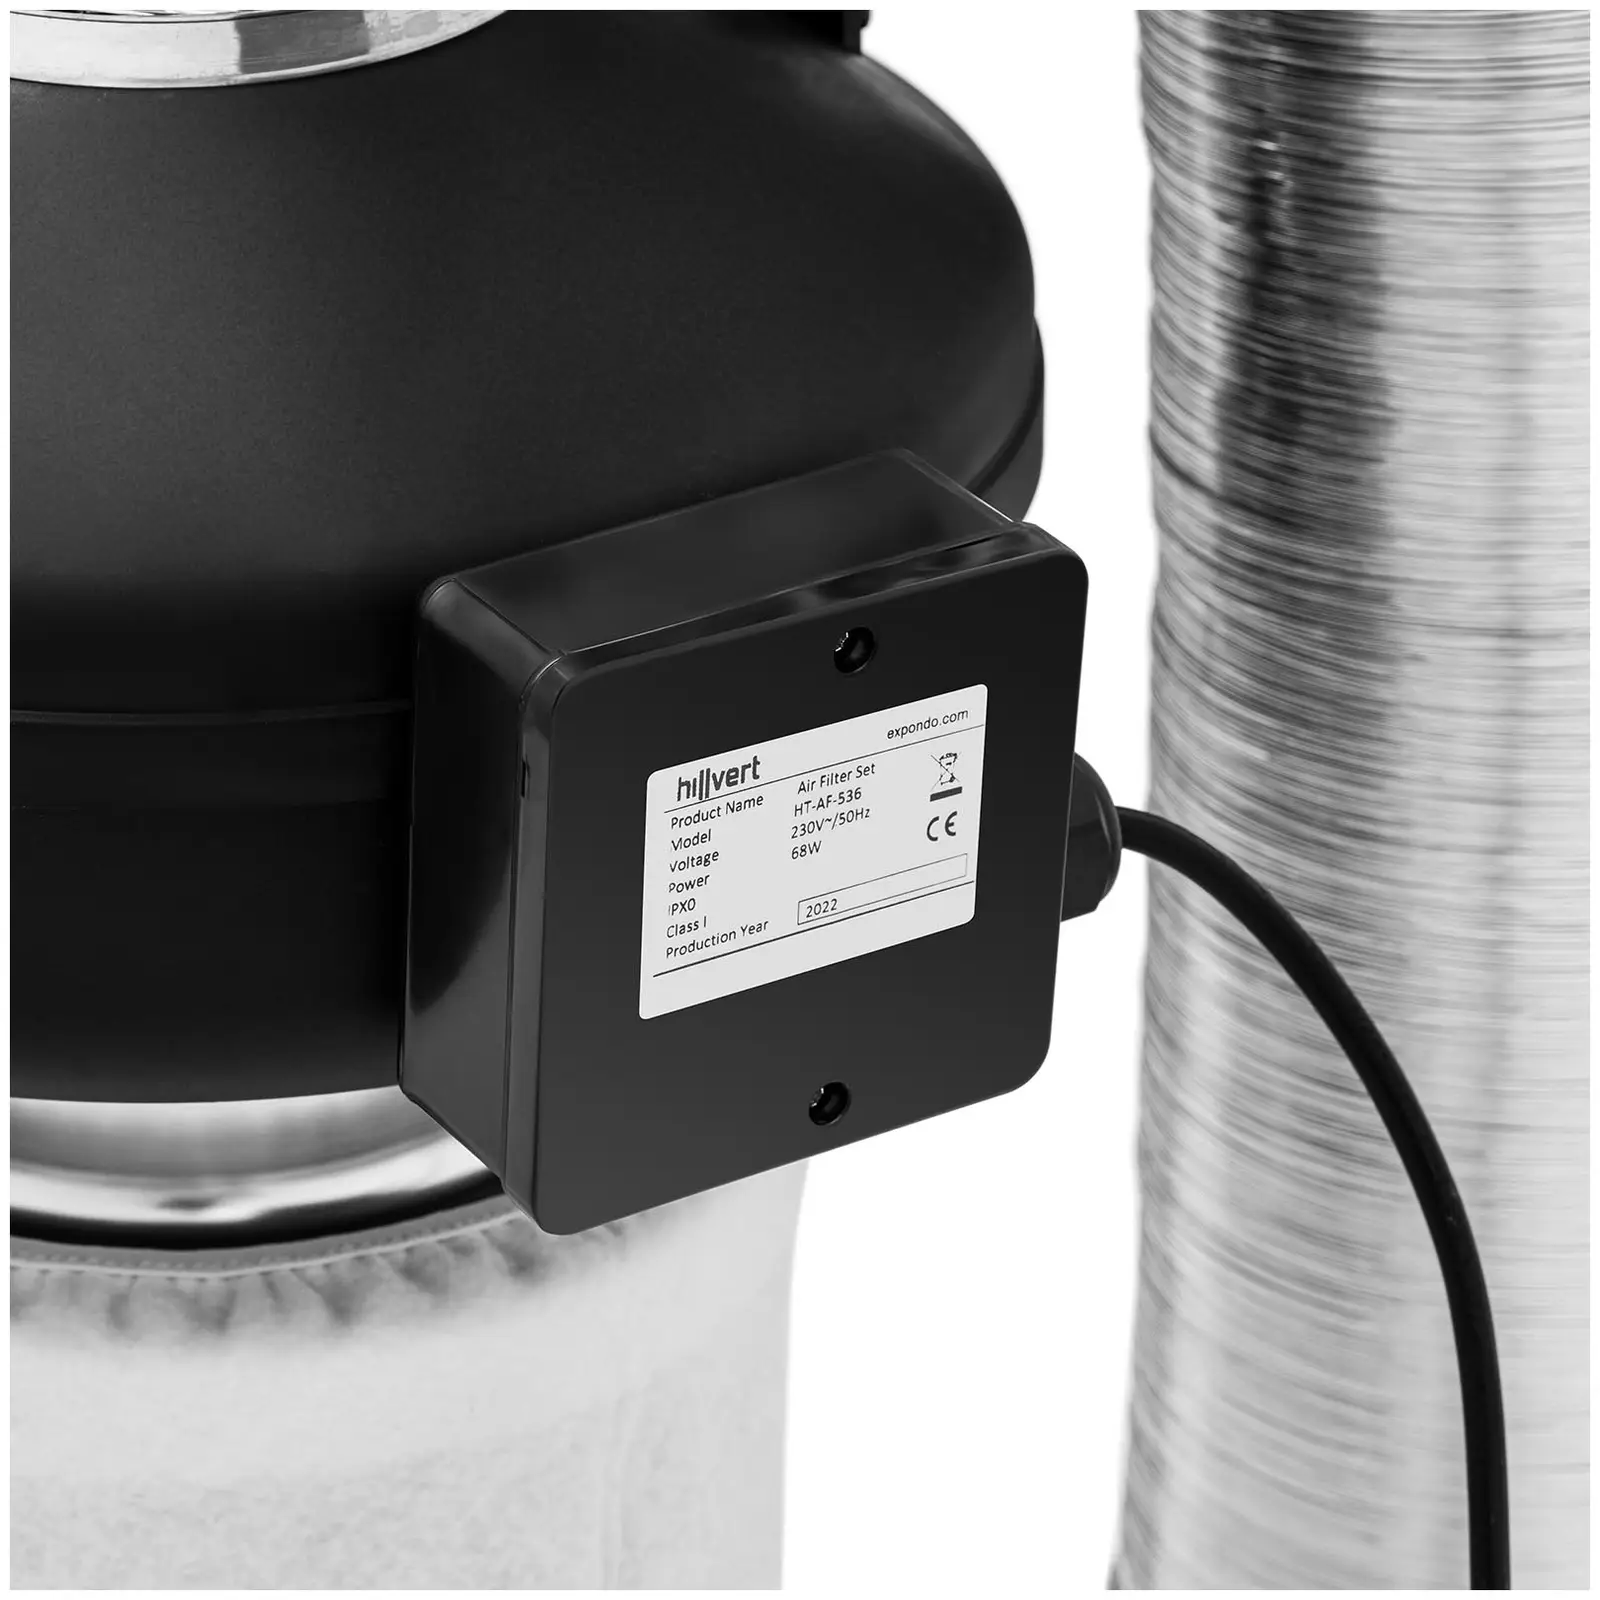 Kit aspirazione aria - Filtro ai carboni attivi, ventilatore a tubo, tubo di scarico - Uscita Ø 130 mm